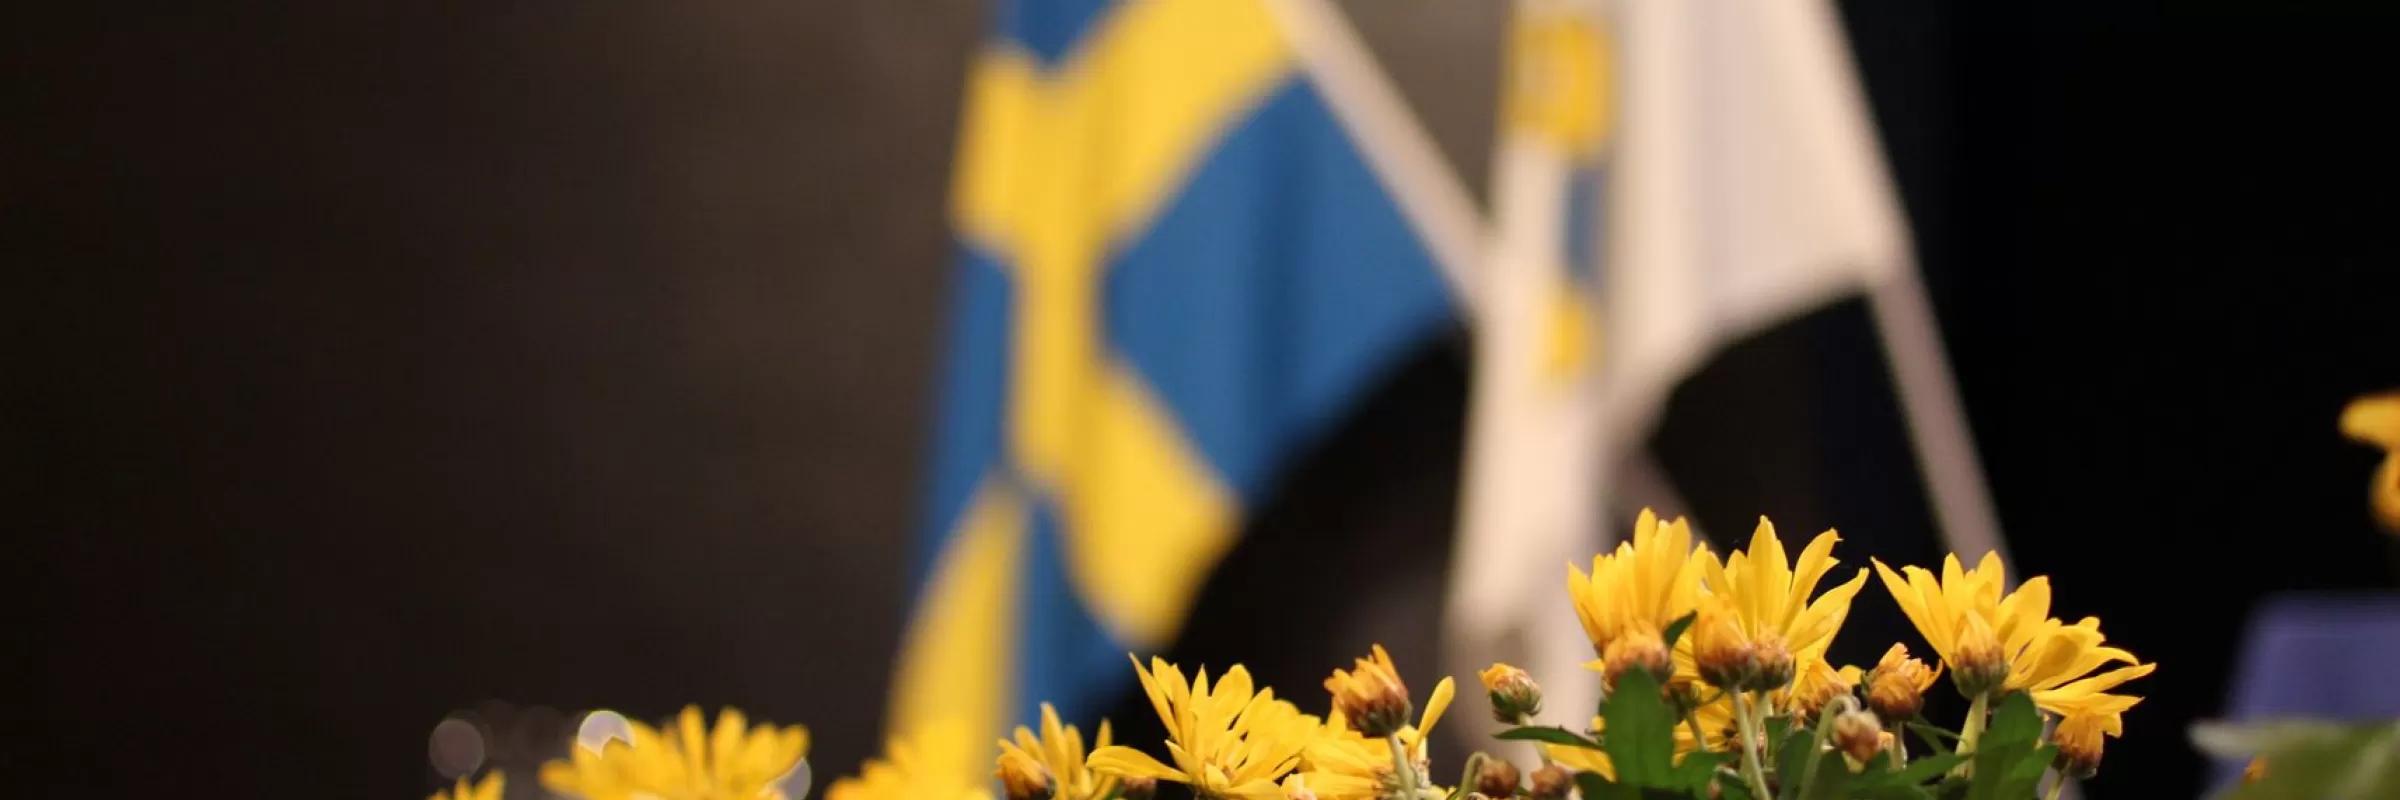 Fotografi av en kruka med gula blommor med två flaggor i bakgrunden, dels den blågula svenska flaggan och sedan standaret för Svenska Lottakåren